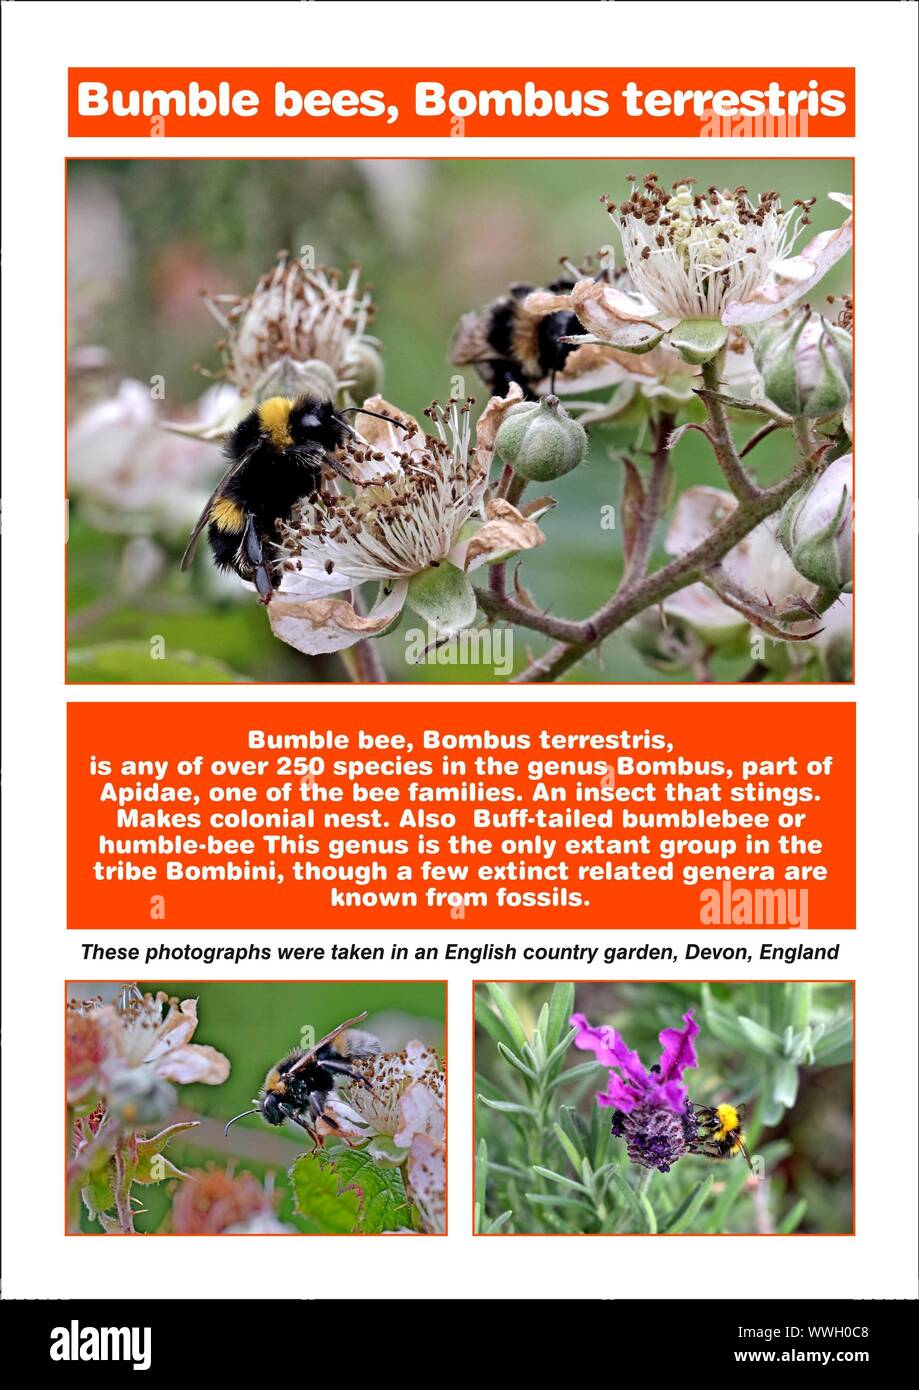 Hummeln, Bombus terrestris, ein Insekt, dass Stiche. Die kolonialen Nest, Buff-tailed Bumblebee, bescheiden - Biene, A4, A4 Seite, Foto, Beschreibung, Text; Stockfoto